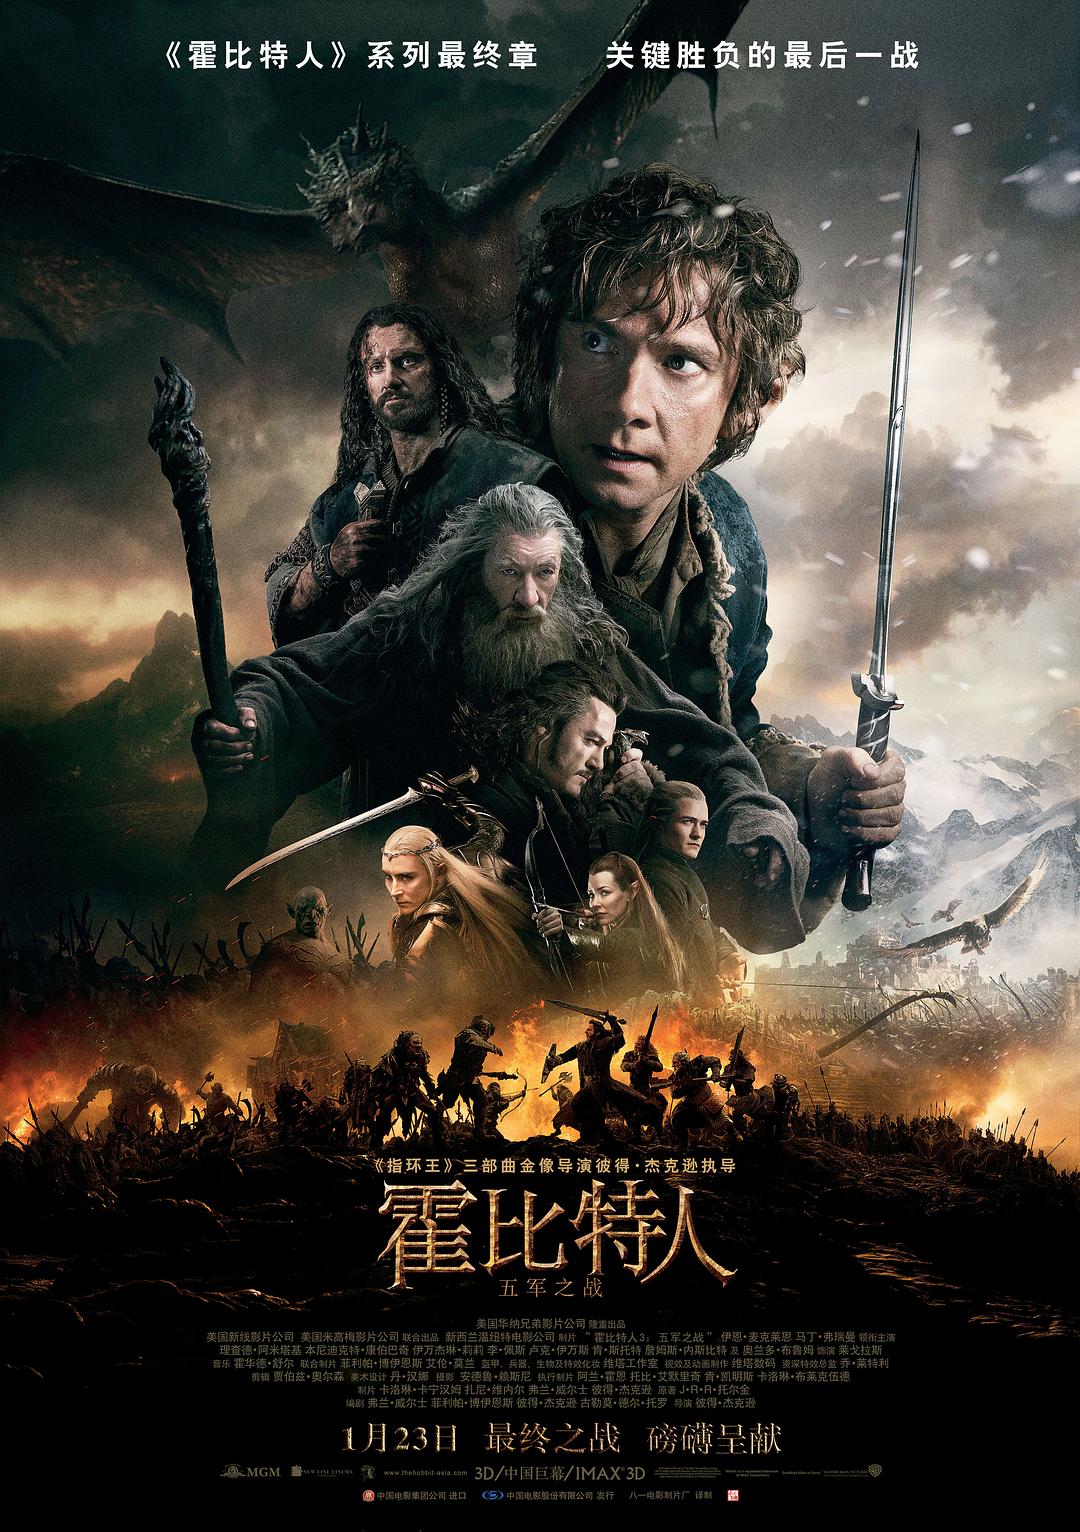 3:֮ս The.Hobbit.The.Battle.of.the.Five.Armies.2014.EXTENDED.1080p.BluRay.X-1.png